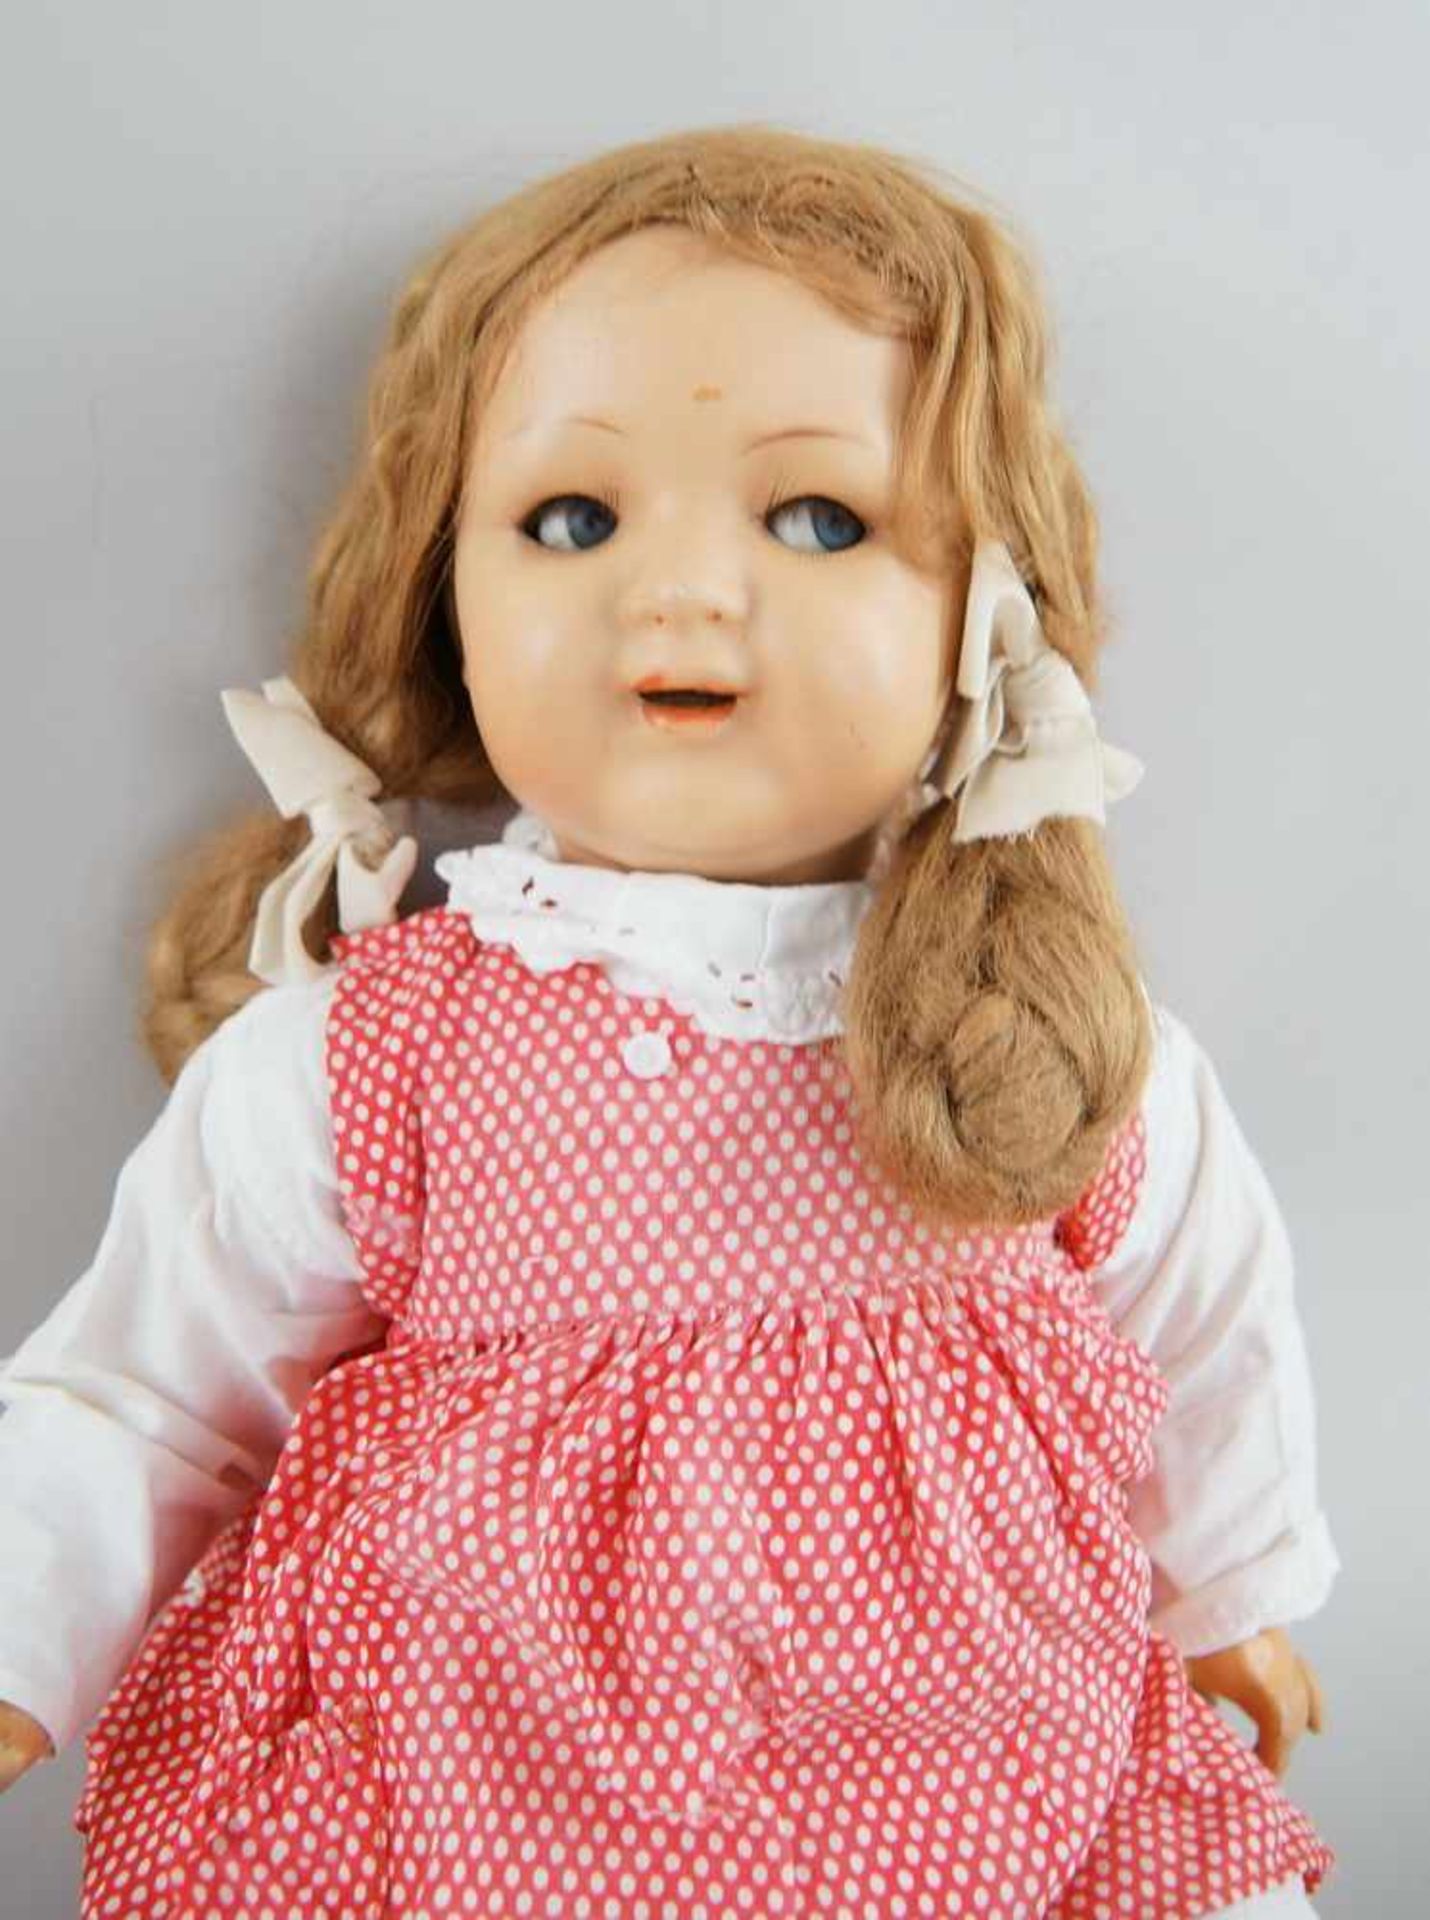 Puppe, wohl K&R, Massekopf, rot gepunktetes Kleid, um 1930, bespielt, 54 cm- - -24.00 % buyer's